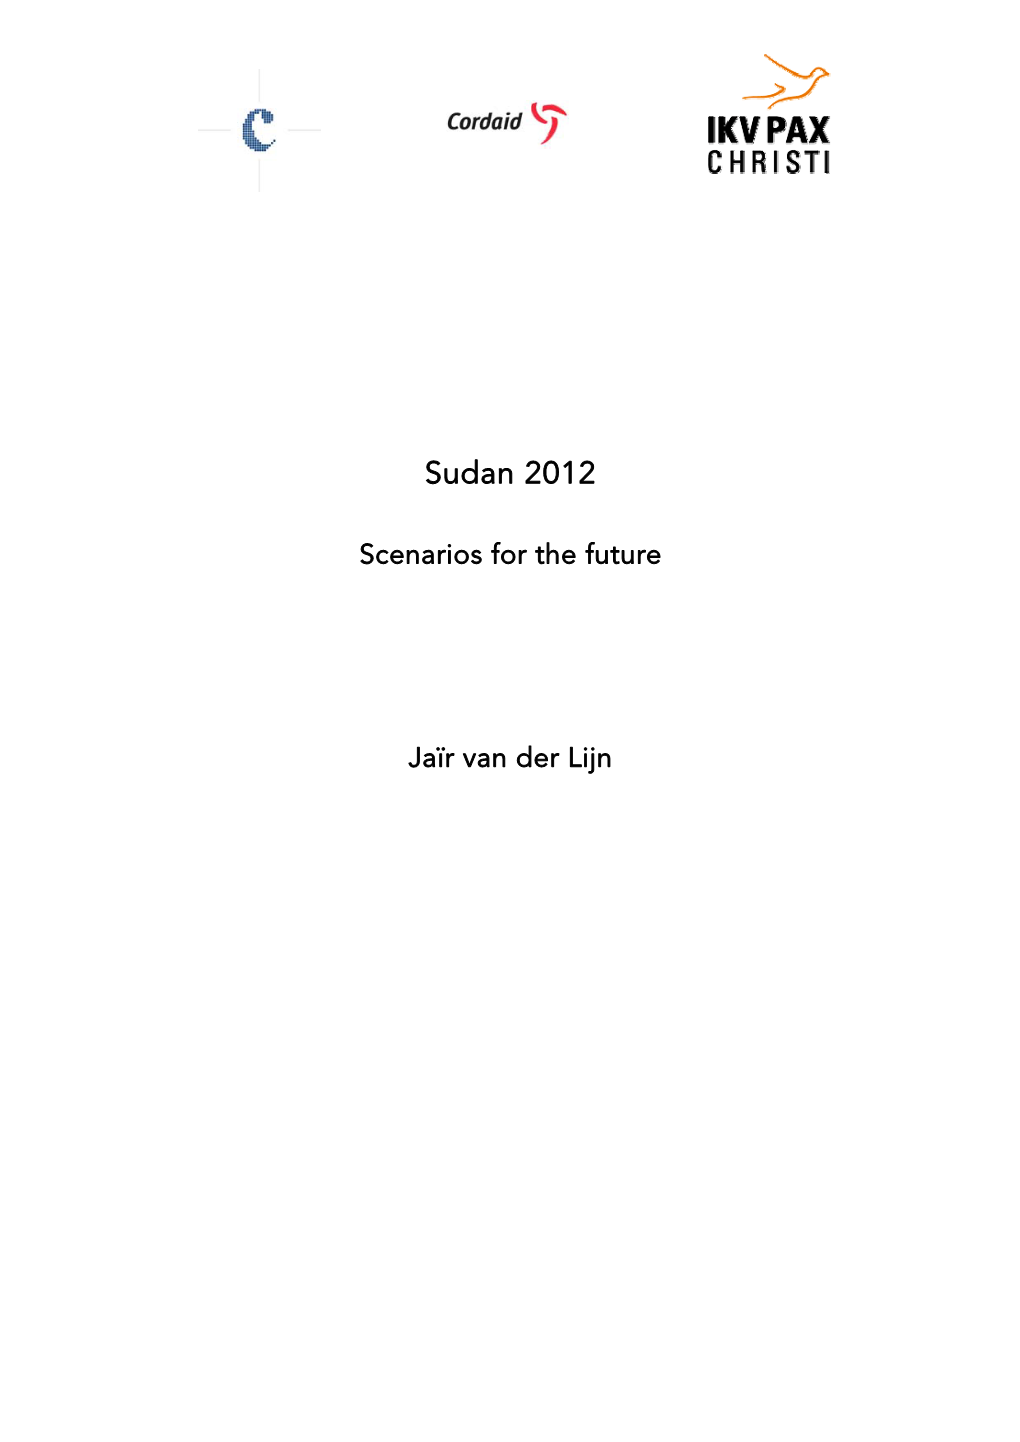 Sudan 2012 Scenarios for the Future